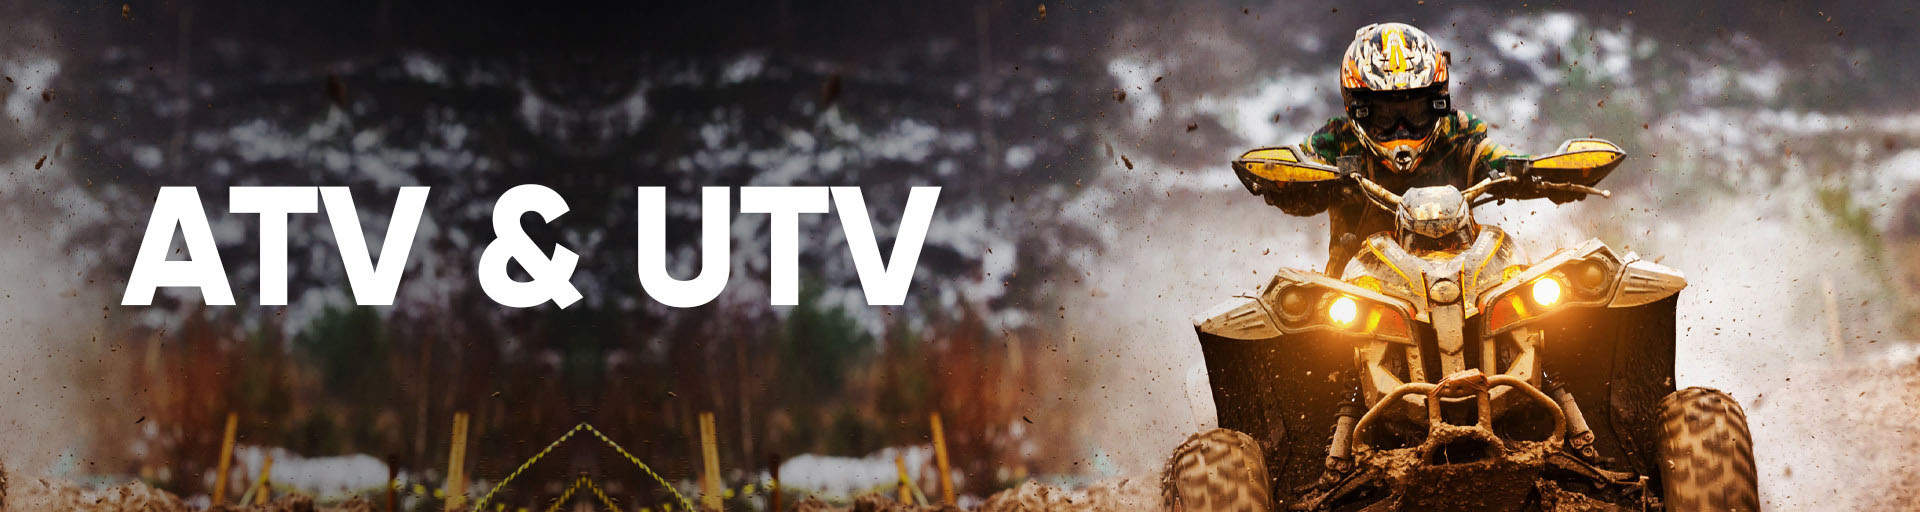 ATV & UTV